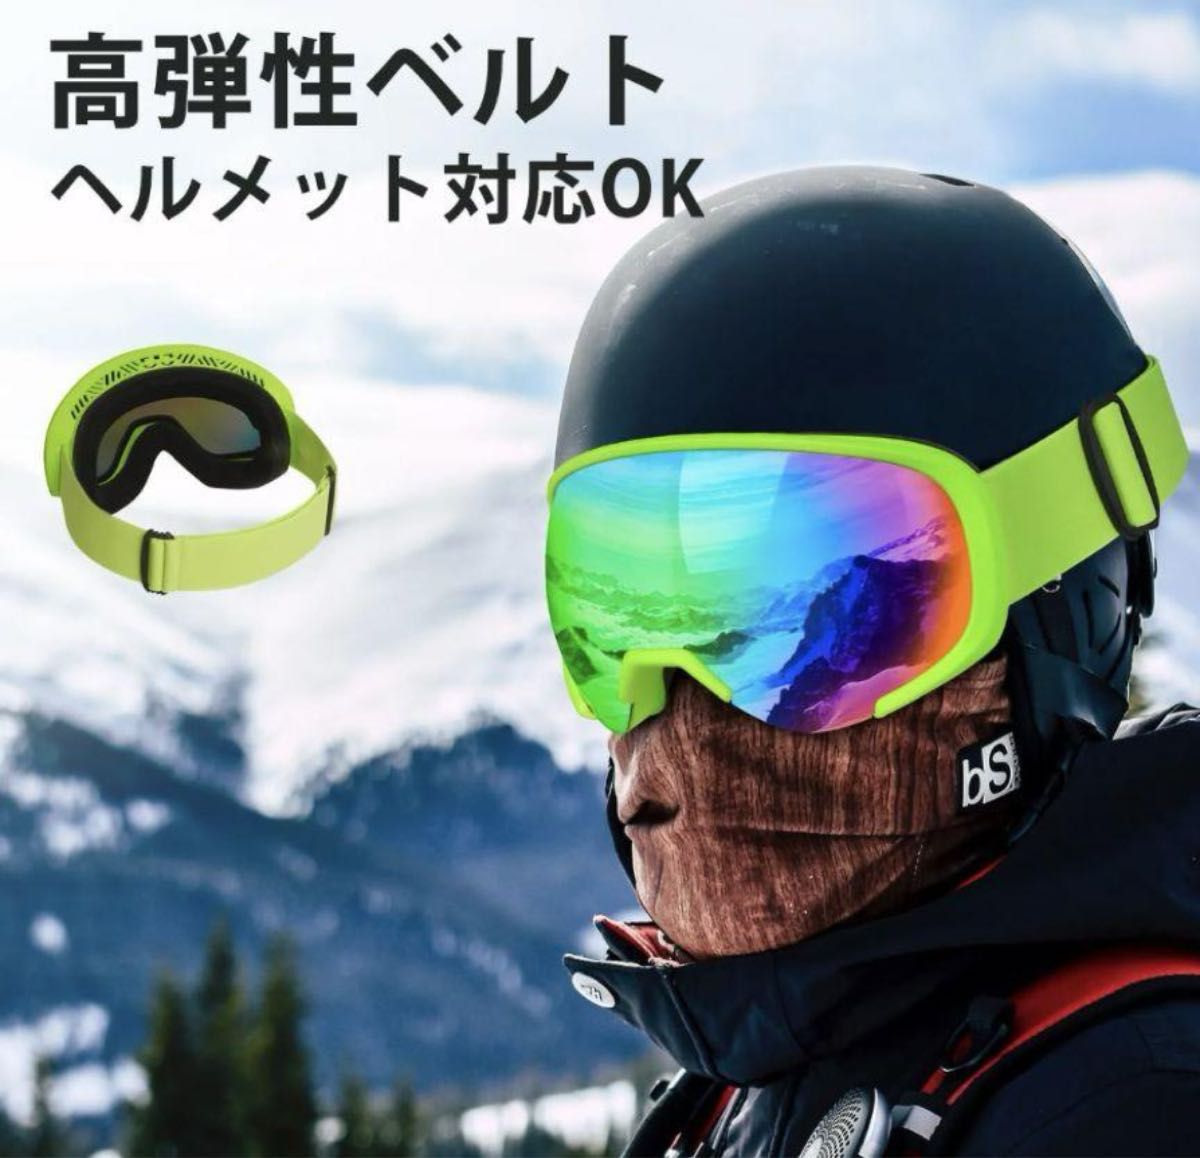 【スキーゴーグル】UVカット スノボー ゴーグル眼鏡対応 男女兼用